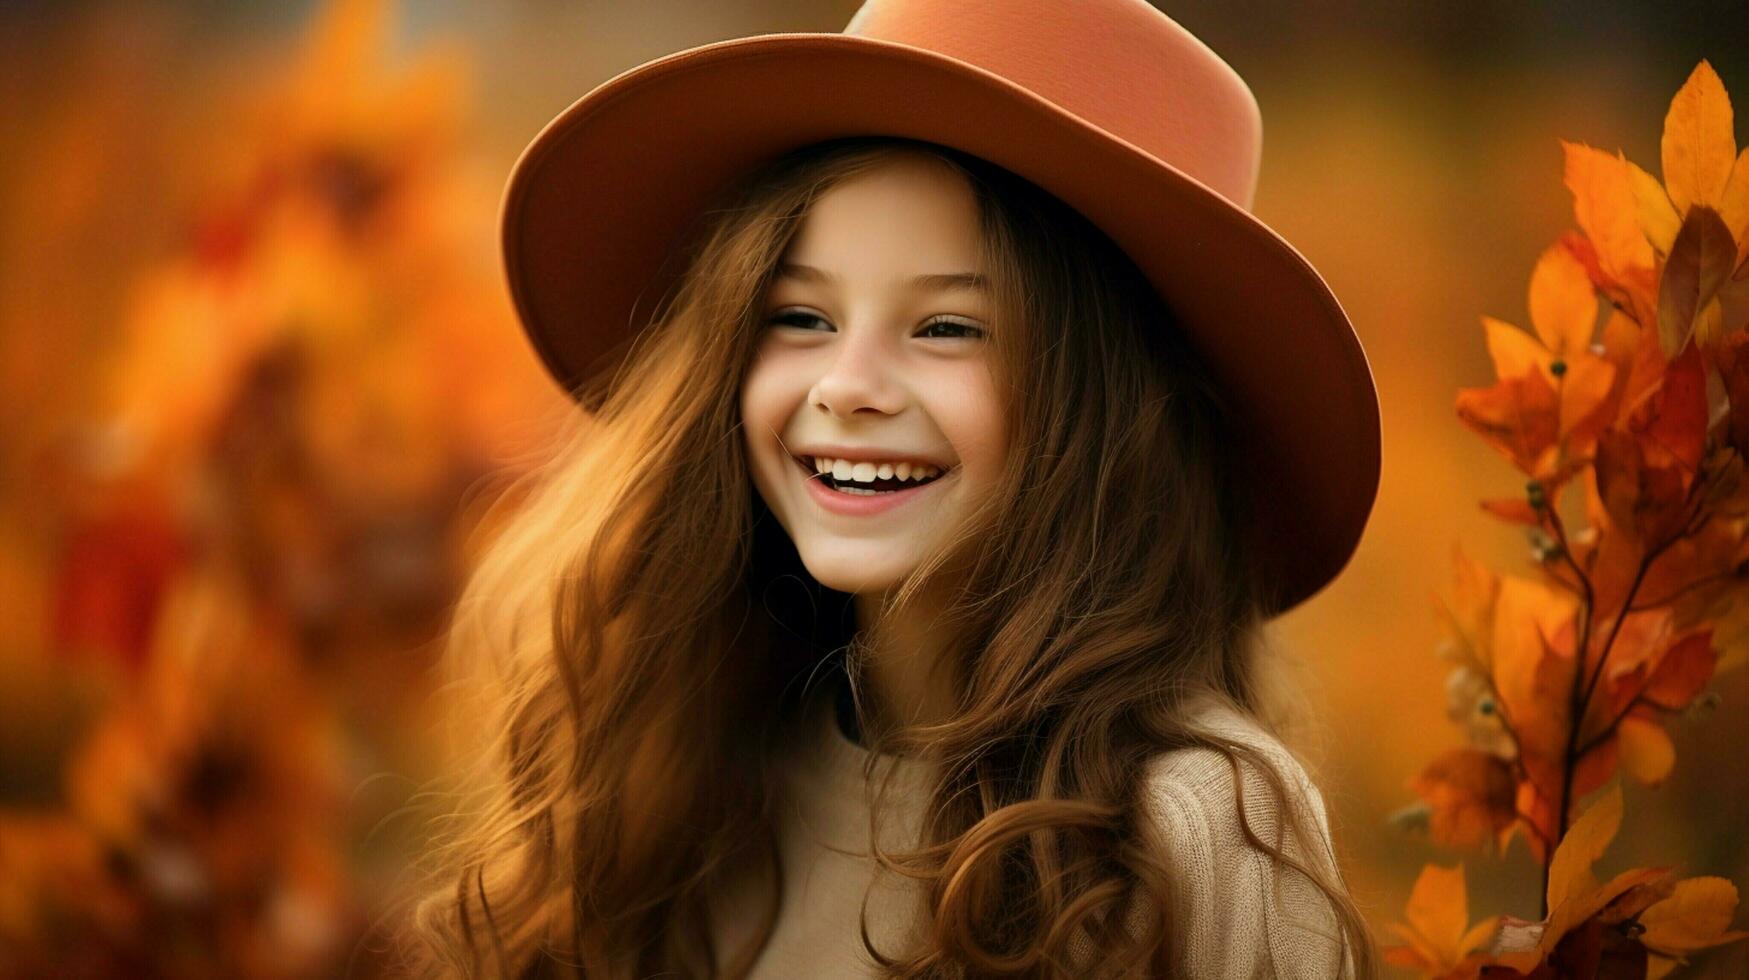 leende flicka åtnjuter natur strålande lycka och skönhet foto